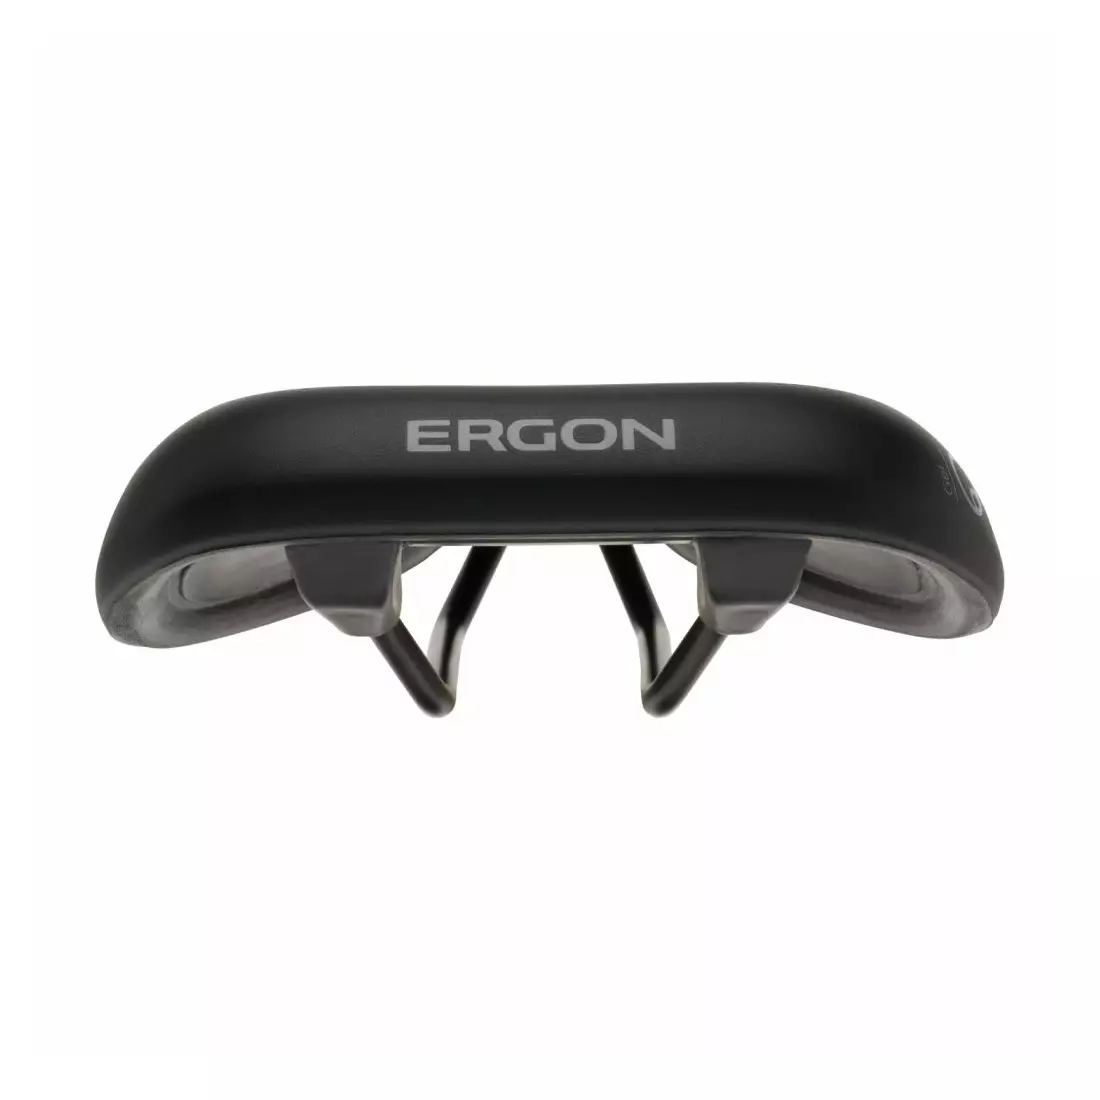 ERGON women's bicycle seat ST GEL WOMAN black ER-44040035